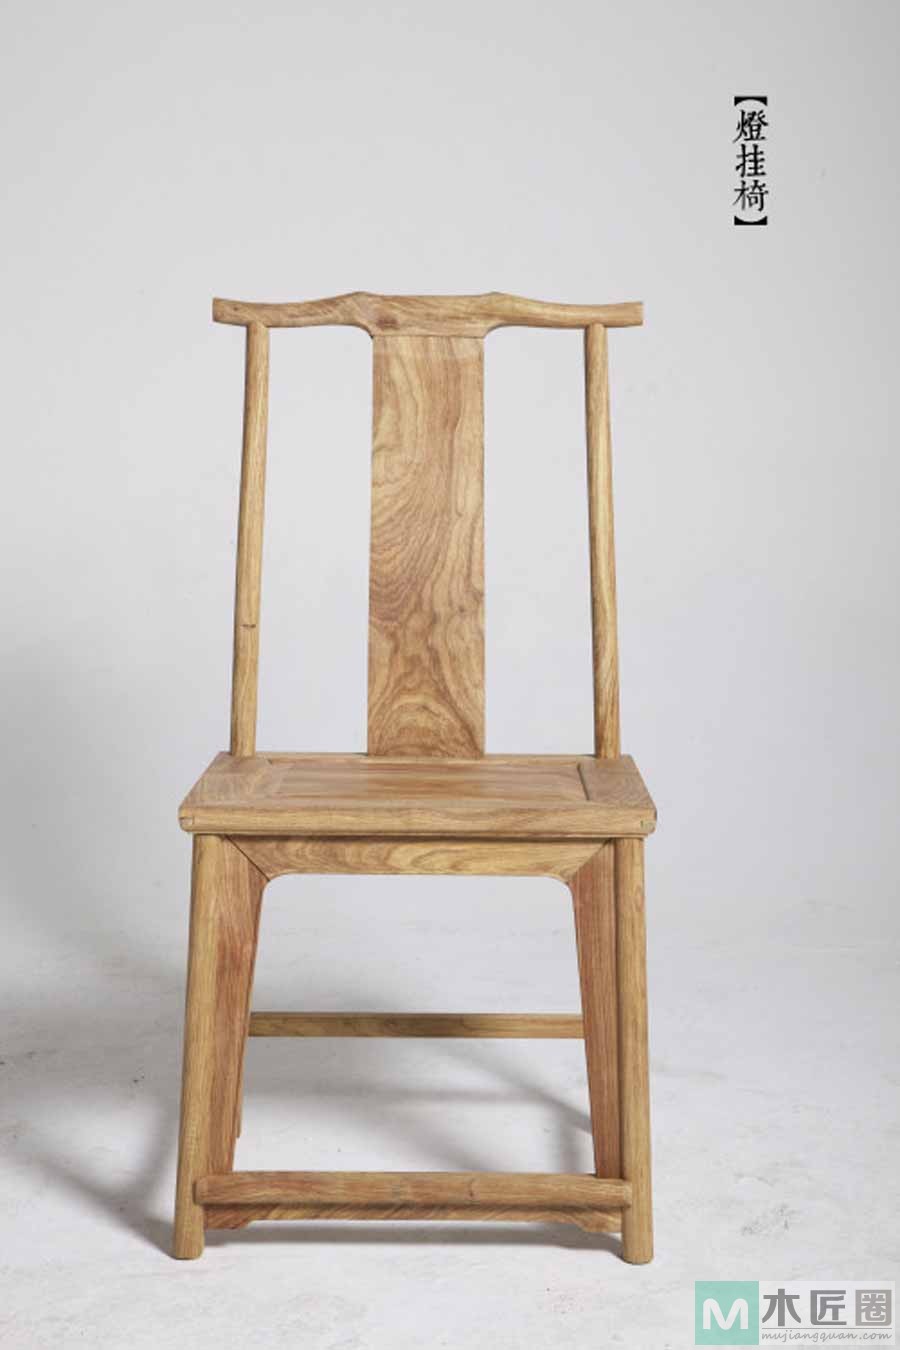 灯挂椅是明代最为普及的椅子，造型好似竹制灯挂而得名